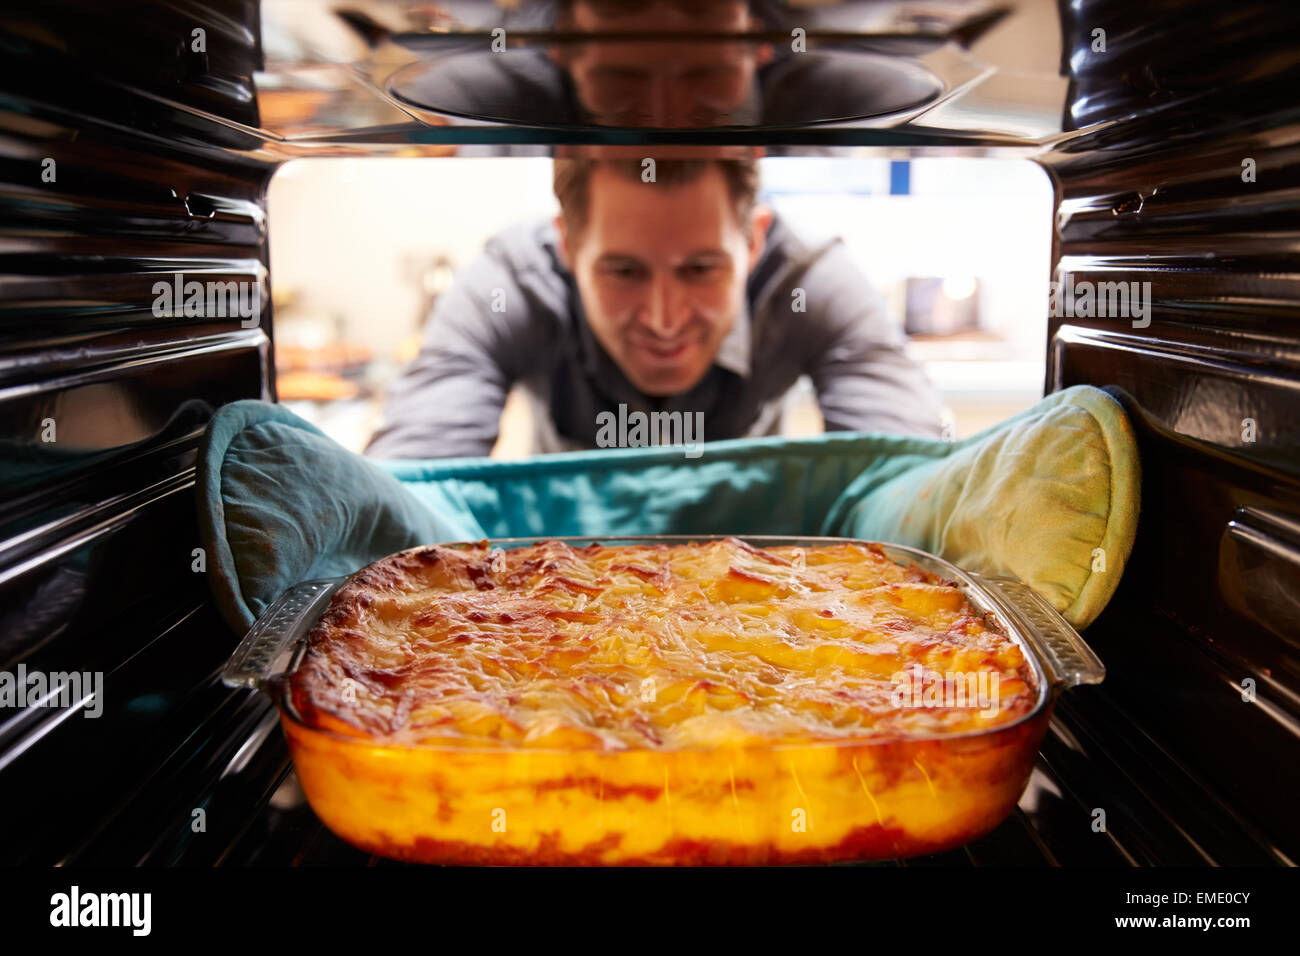 Menschen nehmen gekochte Gericht Lasagne aus dem Ofen Stockfoto